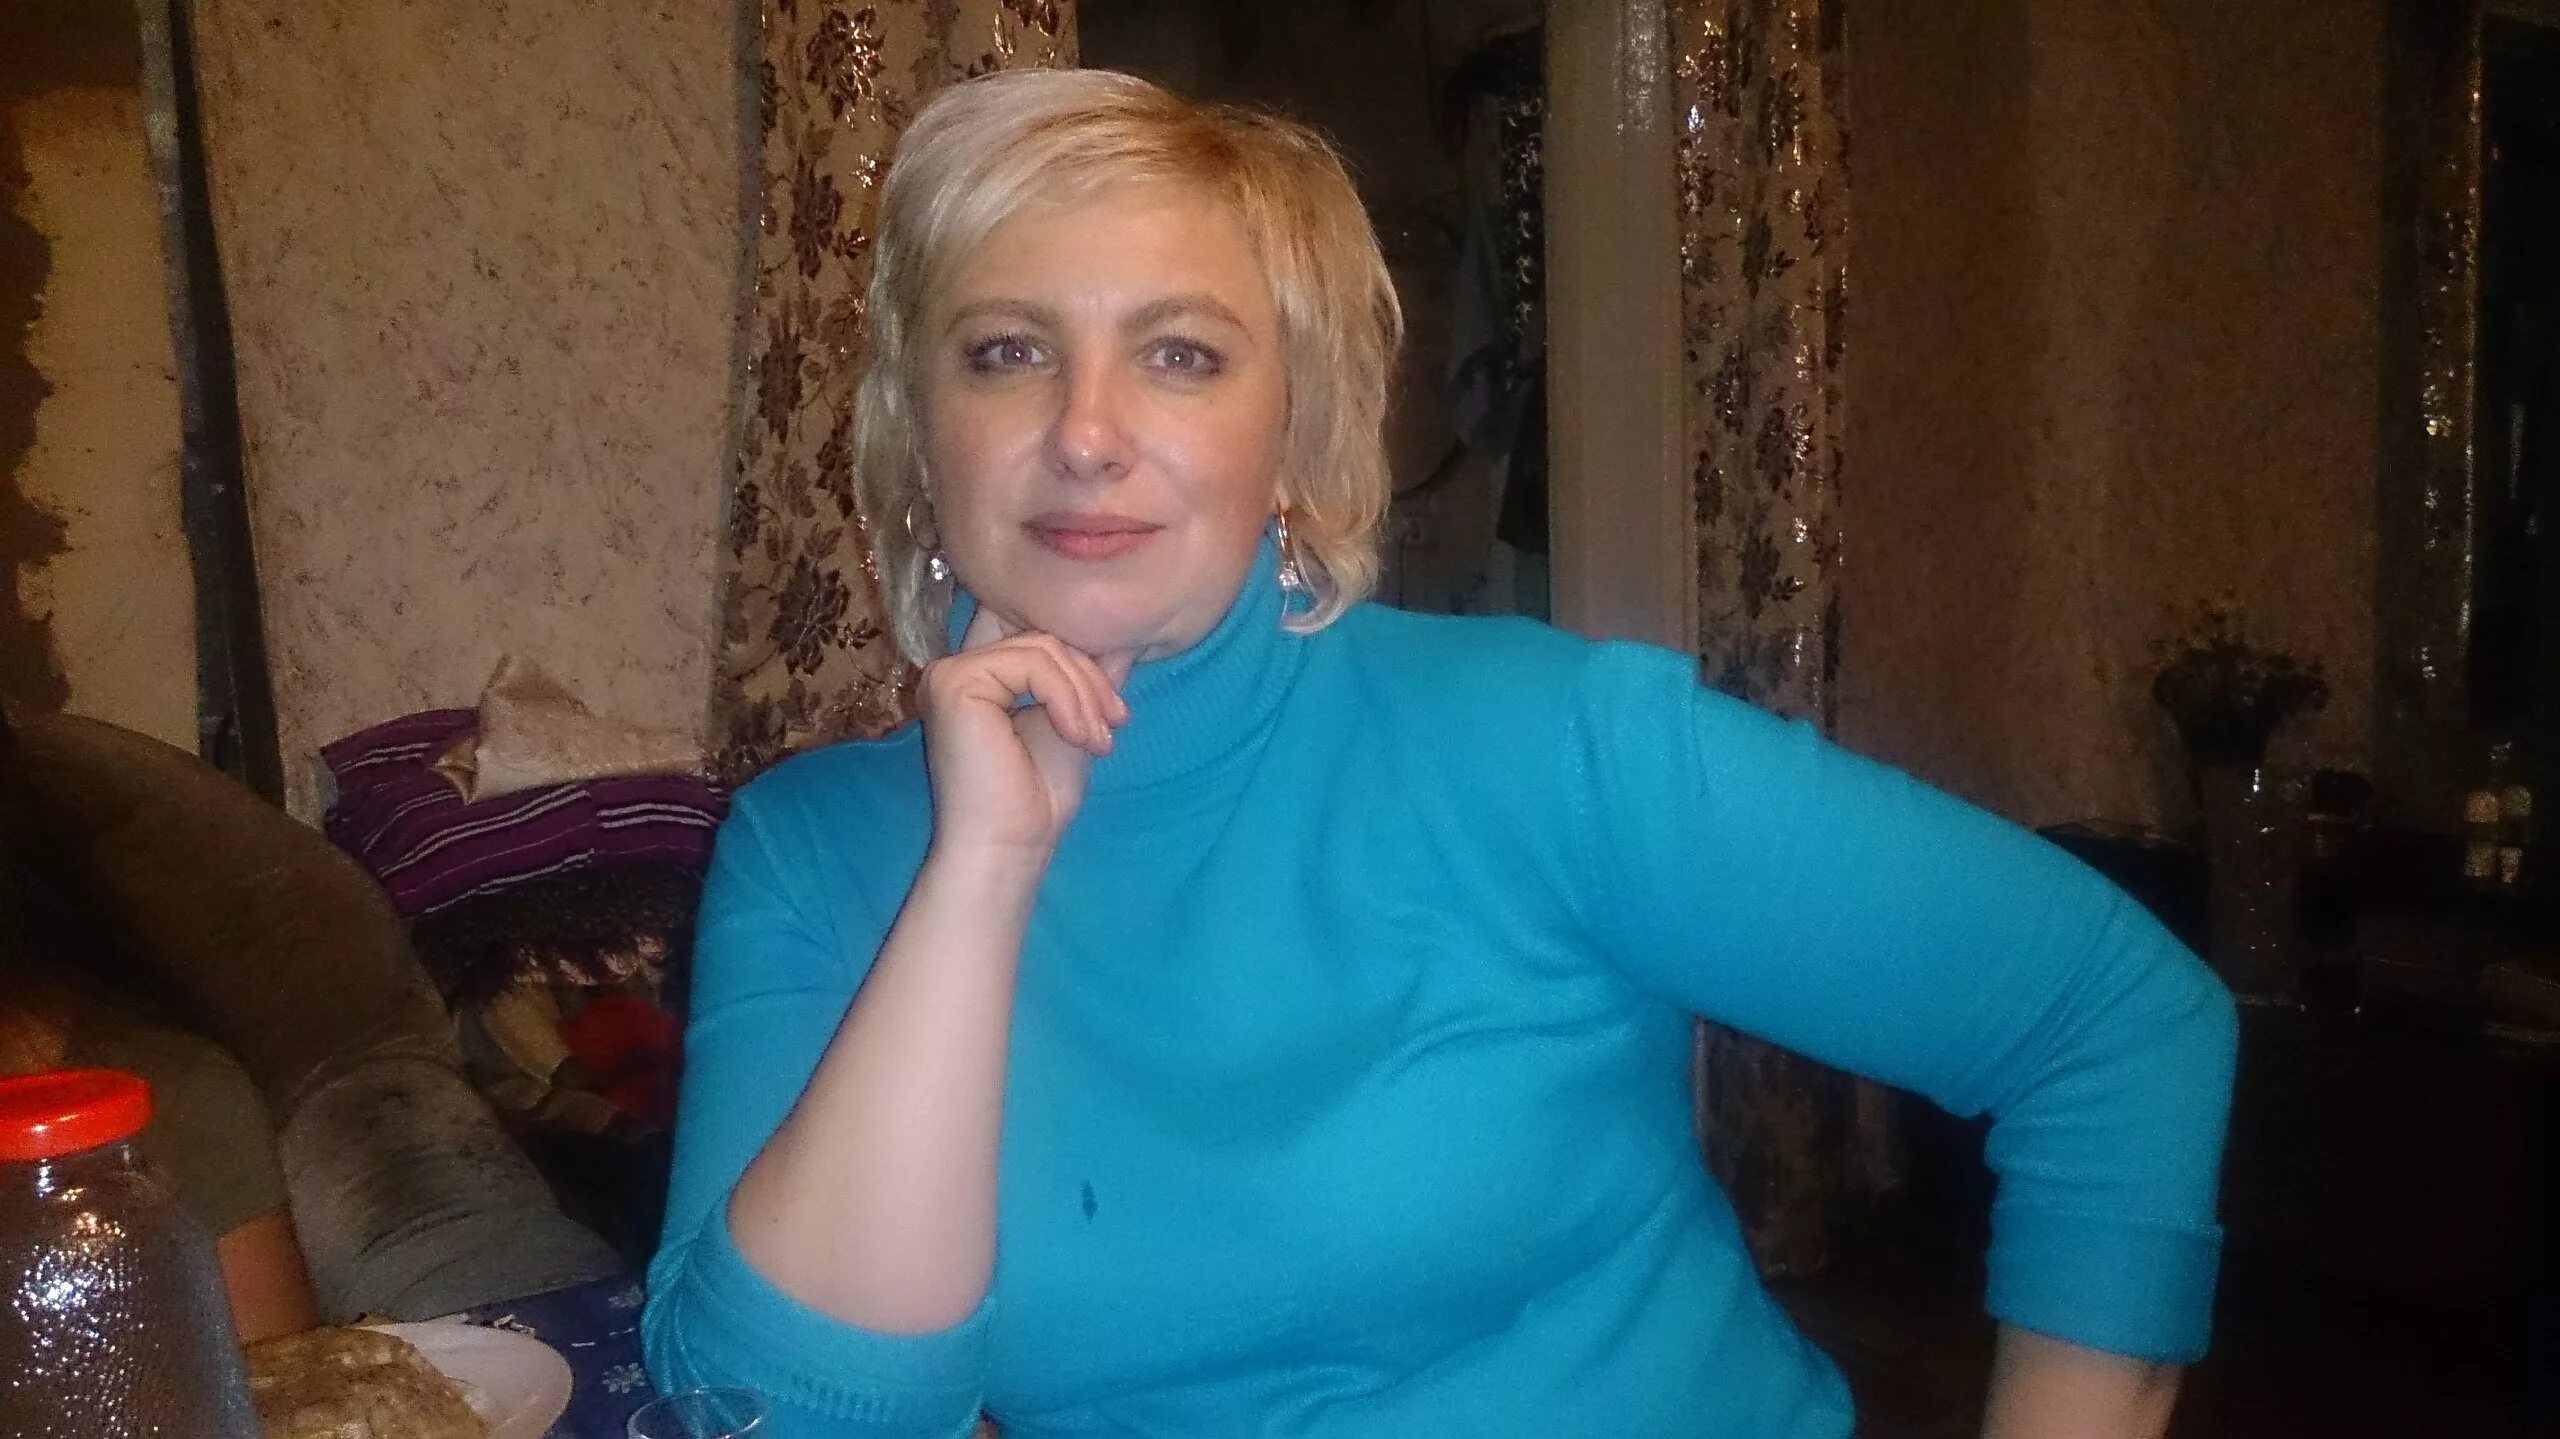 Тетка 40 лет. Обычная русская женщина. Обычные русские женщины 40 лет. Обычные взрослые женщины. Обычная женщина 40 лет.